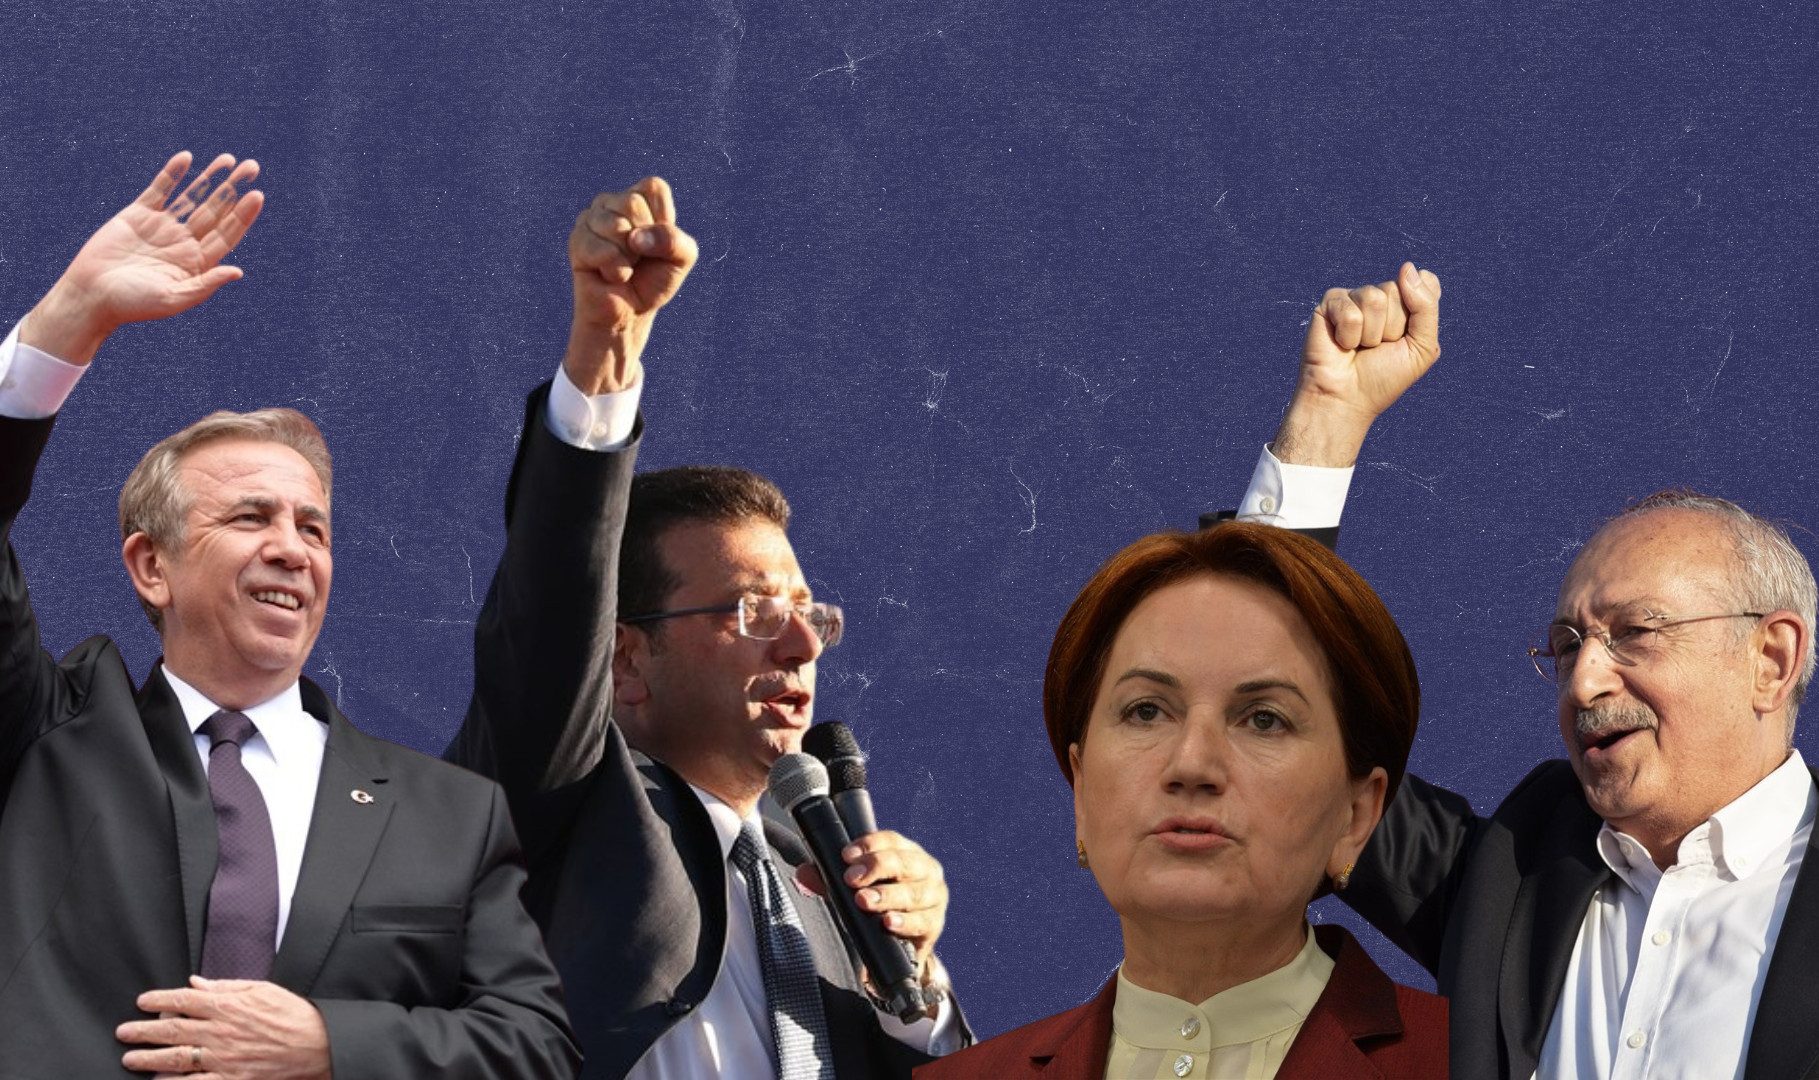 Τουρκία: Μετά τον Ερντογάν, ποιος; - Πώς θα κινηθεί η αντιπολίτευση σε περίπτωση που αναλάβει την εξουσία